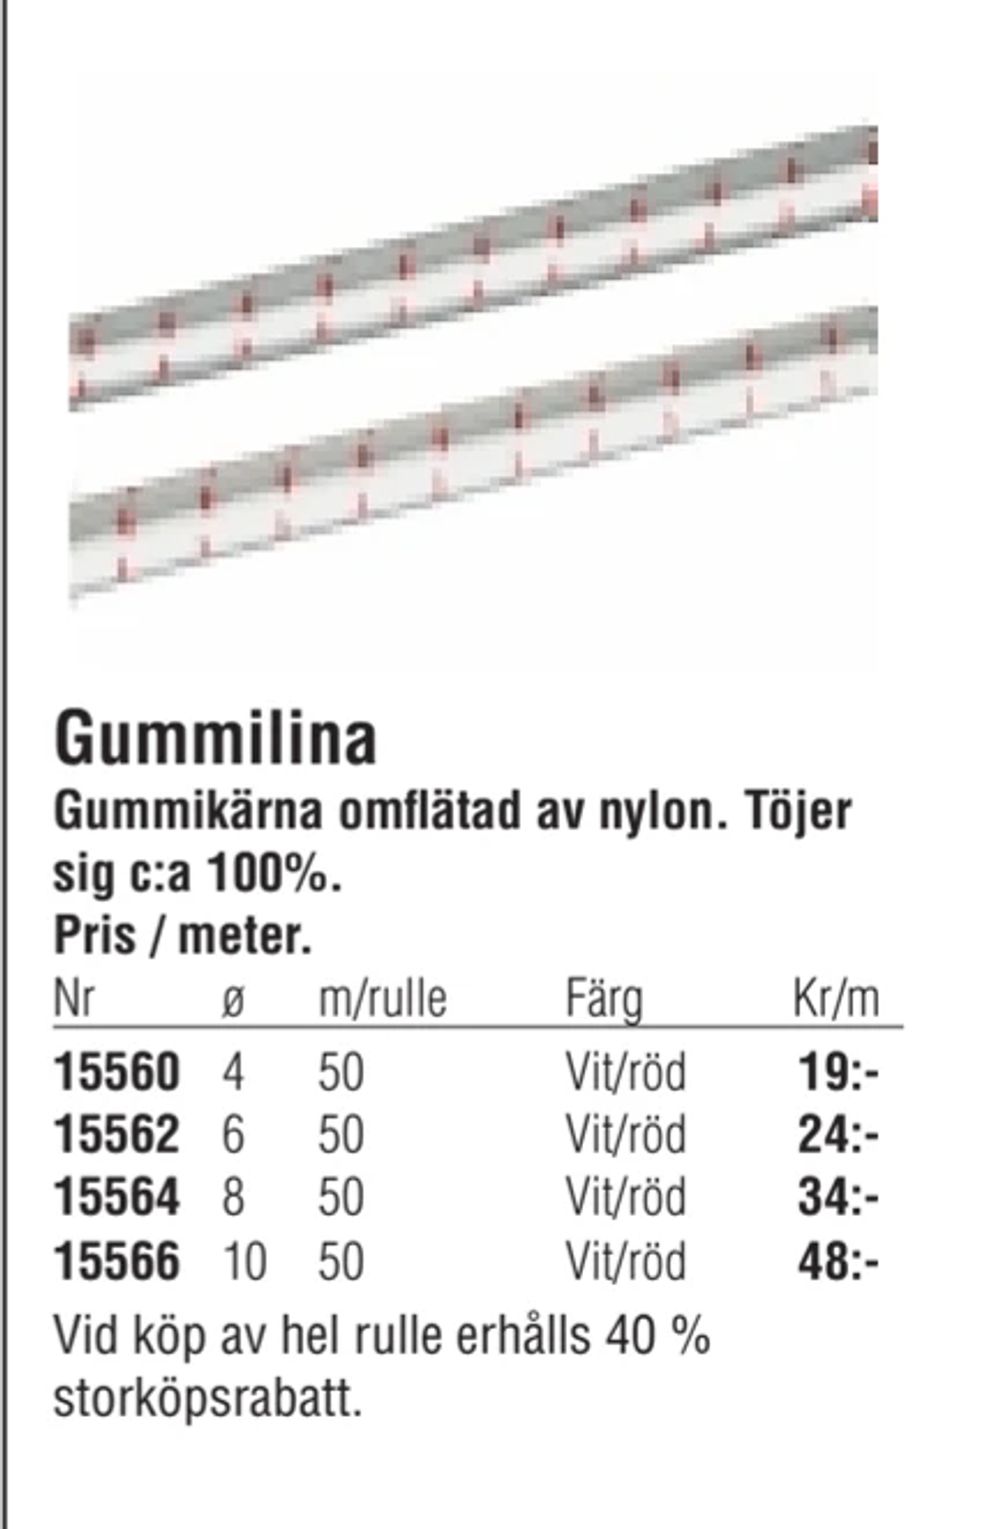 Erbjudanden på Gummilina från Erlandsons Brygga för 19 kr